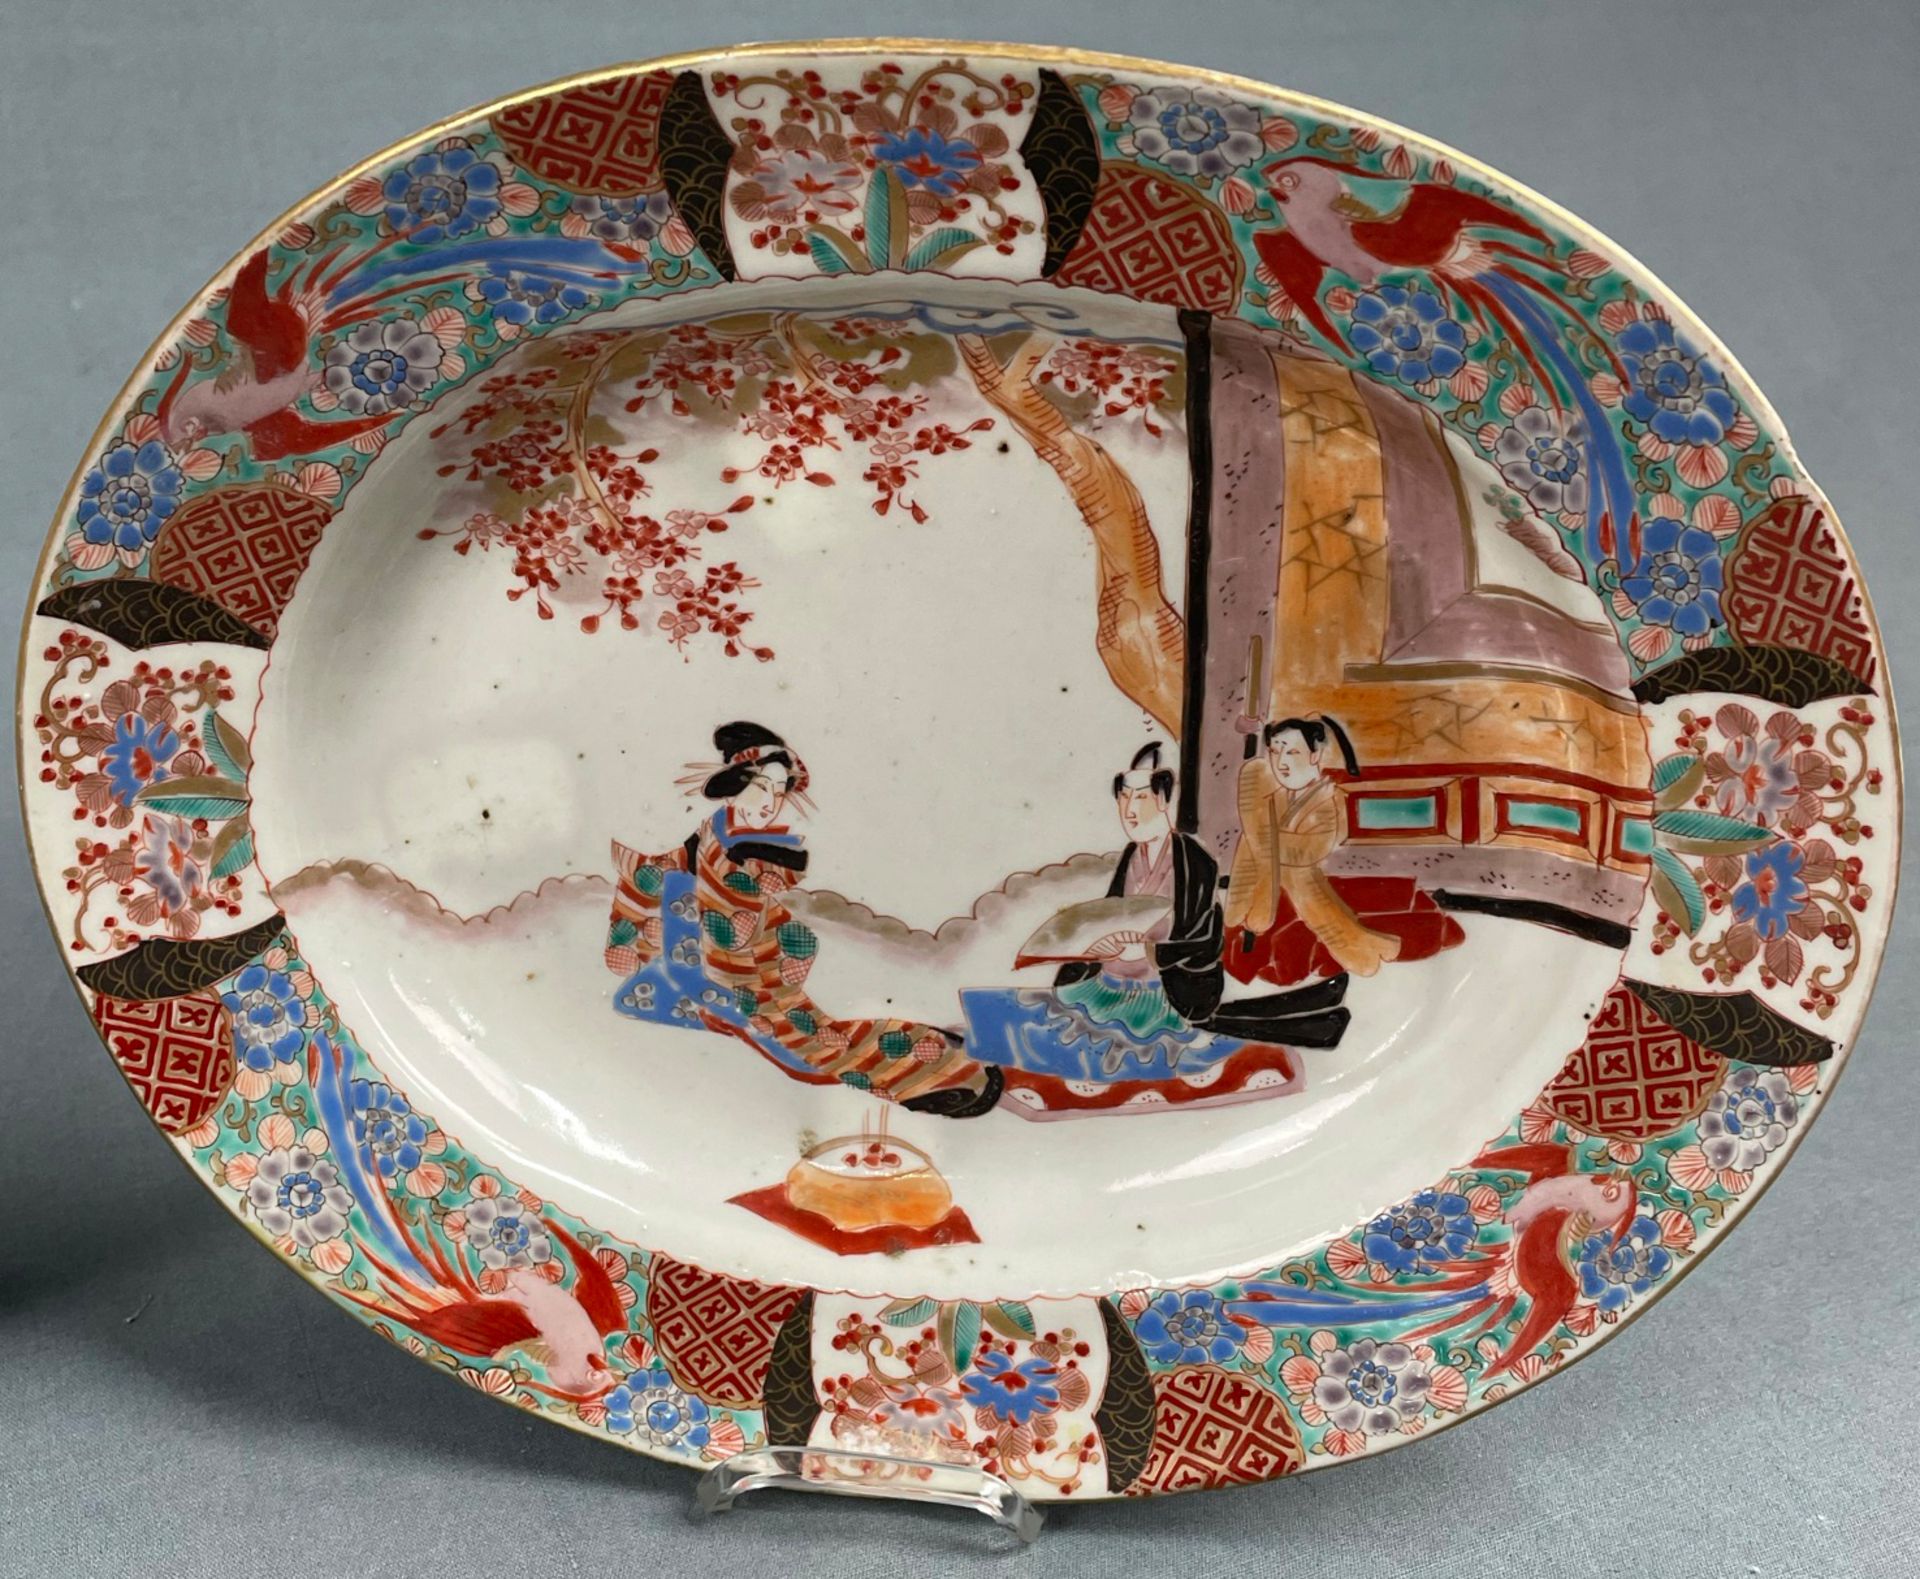 3 Teller und eine Schale. Wohl China antik 18. / 19. Jahrhundert? - Image 5 of 10